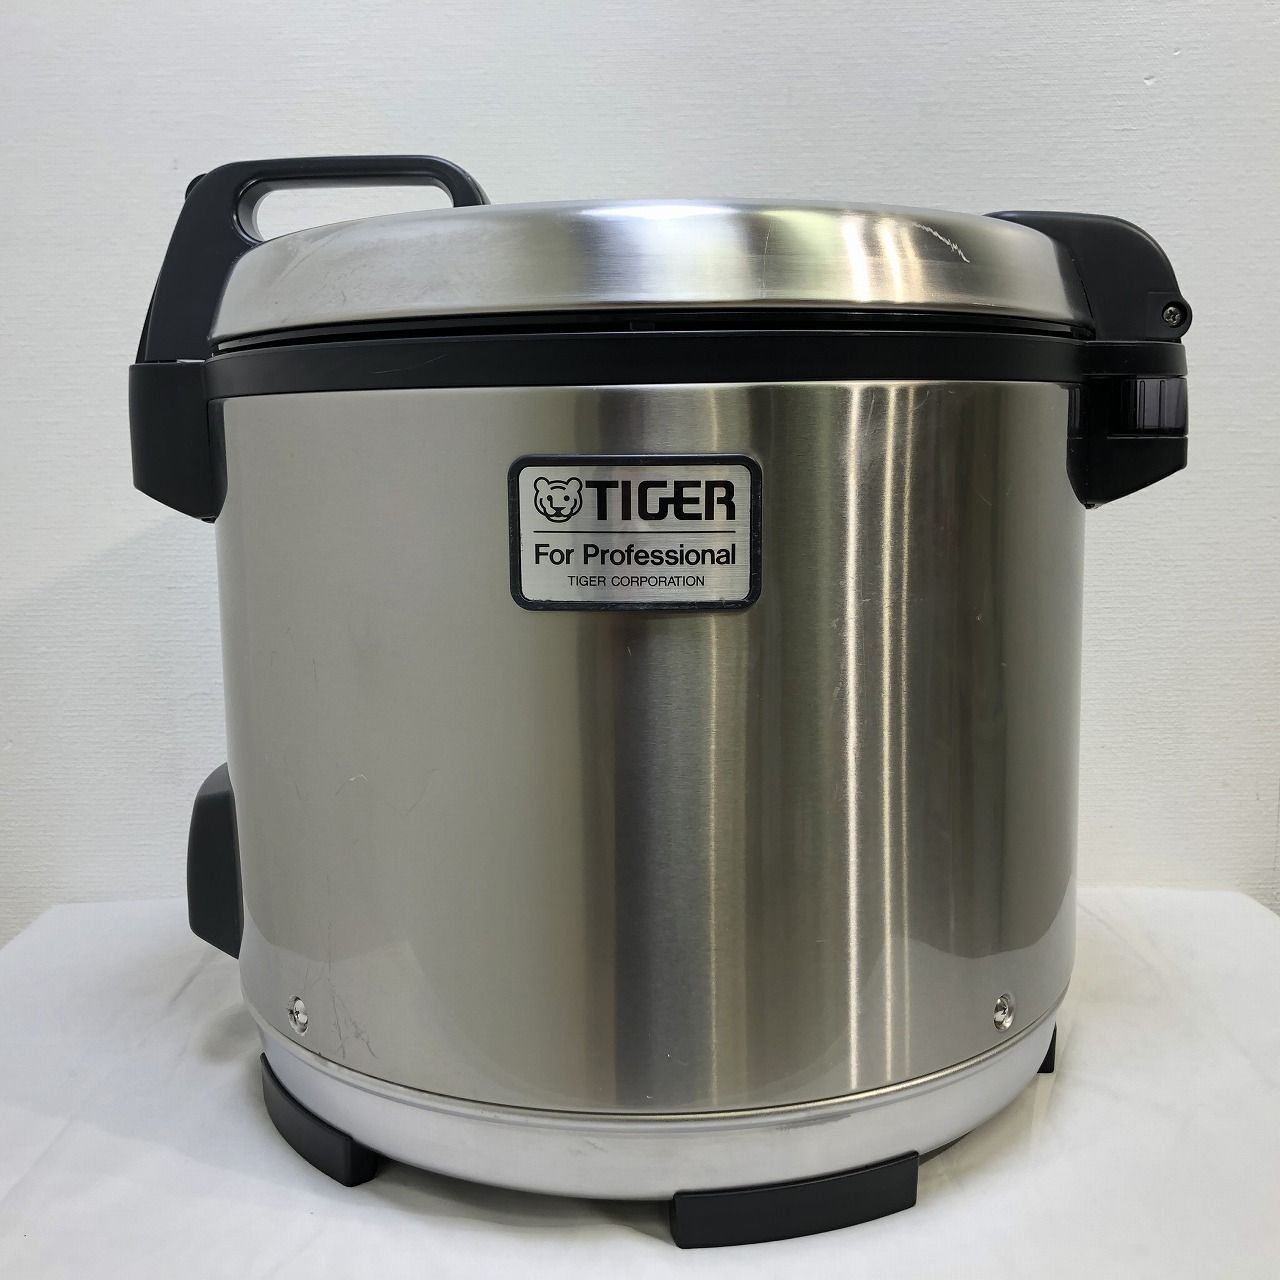 TIGER タイガー 業務用ジャー炊飯器 【炊きたて】 2升炊き JNO-A360 F ...